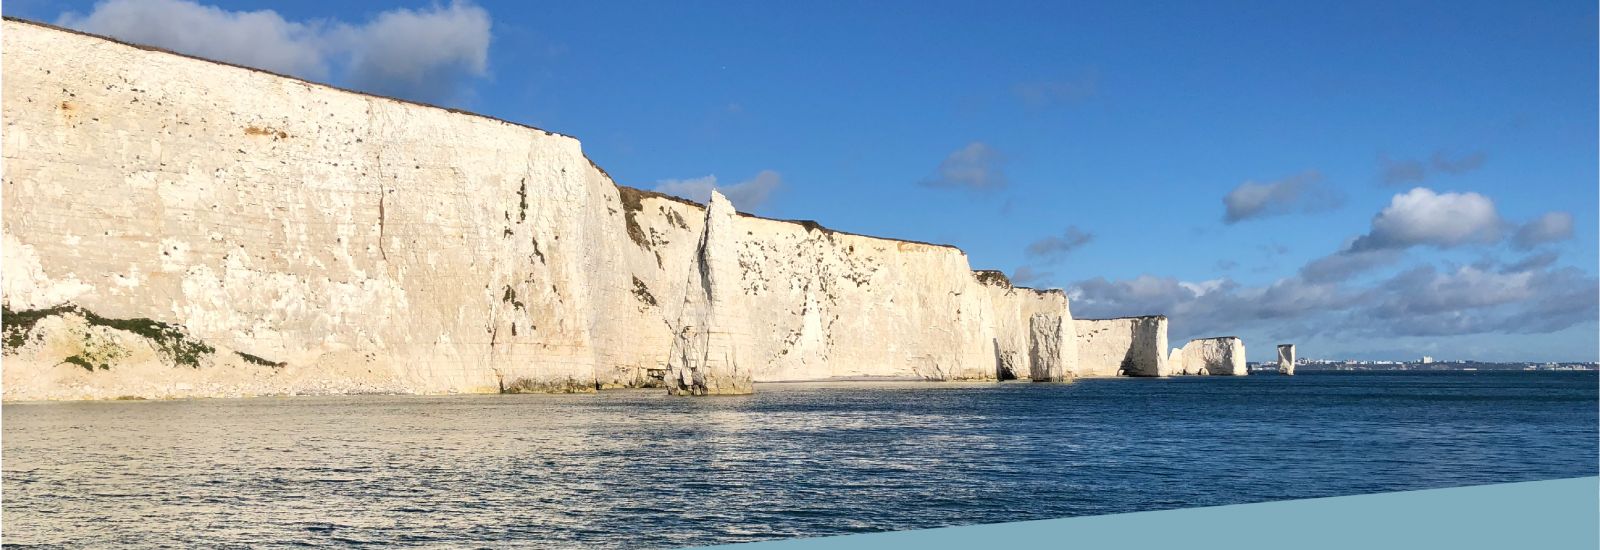 White cliffs on the Dorset coastline.